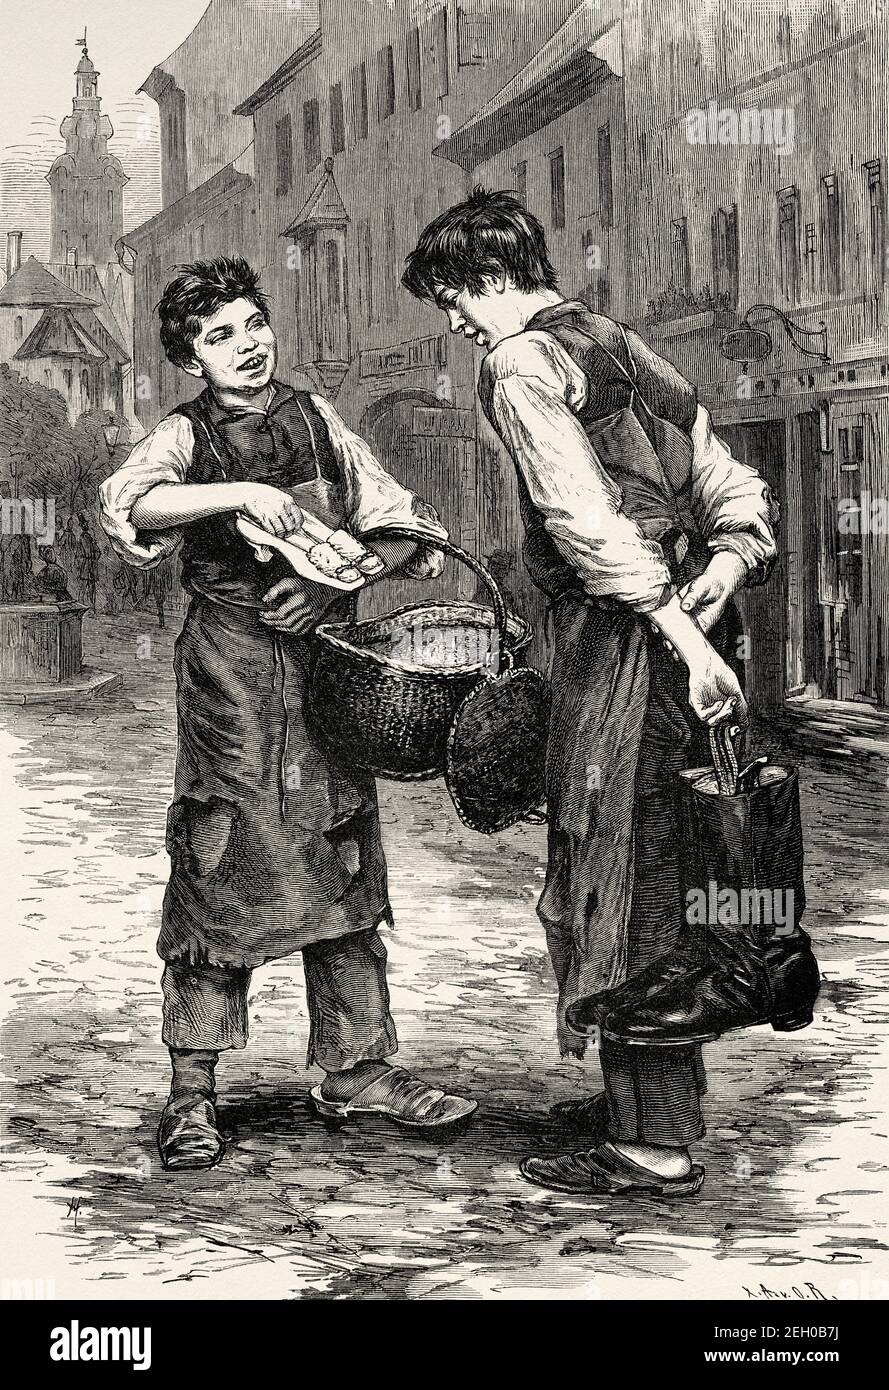 Dos jóvenes zapateros en una calle en el siglo XIX, Europa. Antiguo siglo  19 grabado ilustración de el Mundo ilustrado 1879 Fotografía de stock -  Alamy